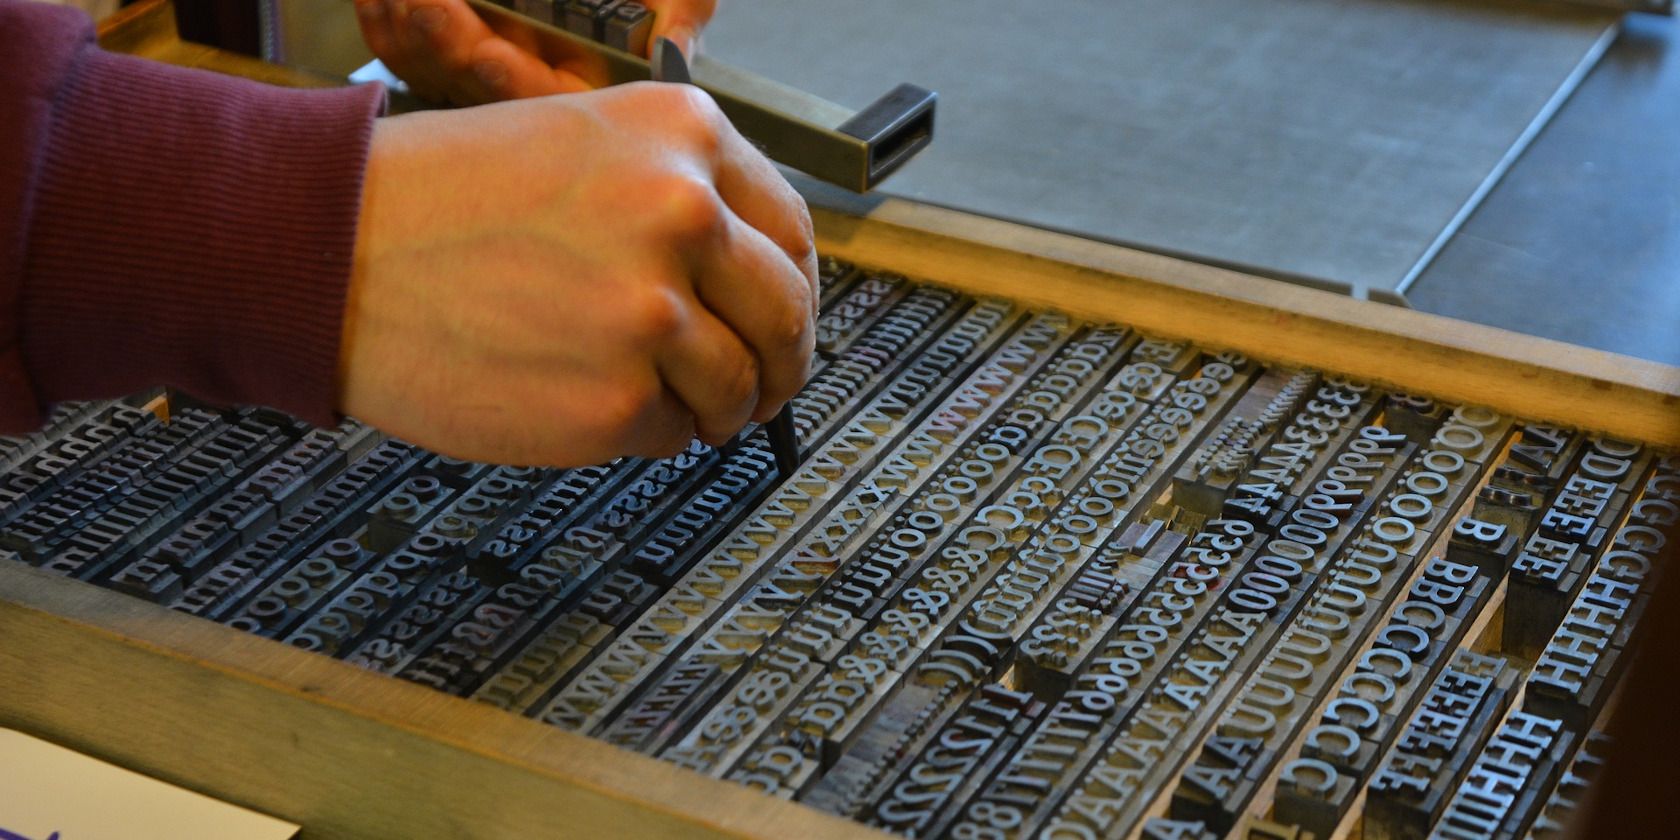 Pair of Human Hands Preparing a Printing Press